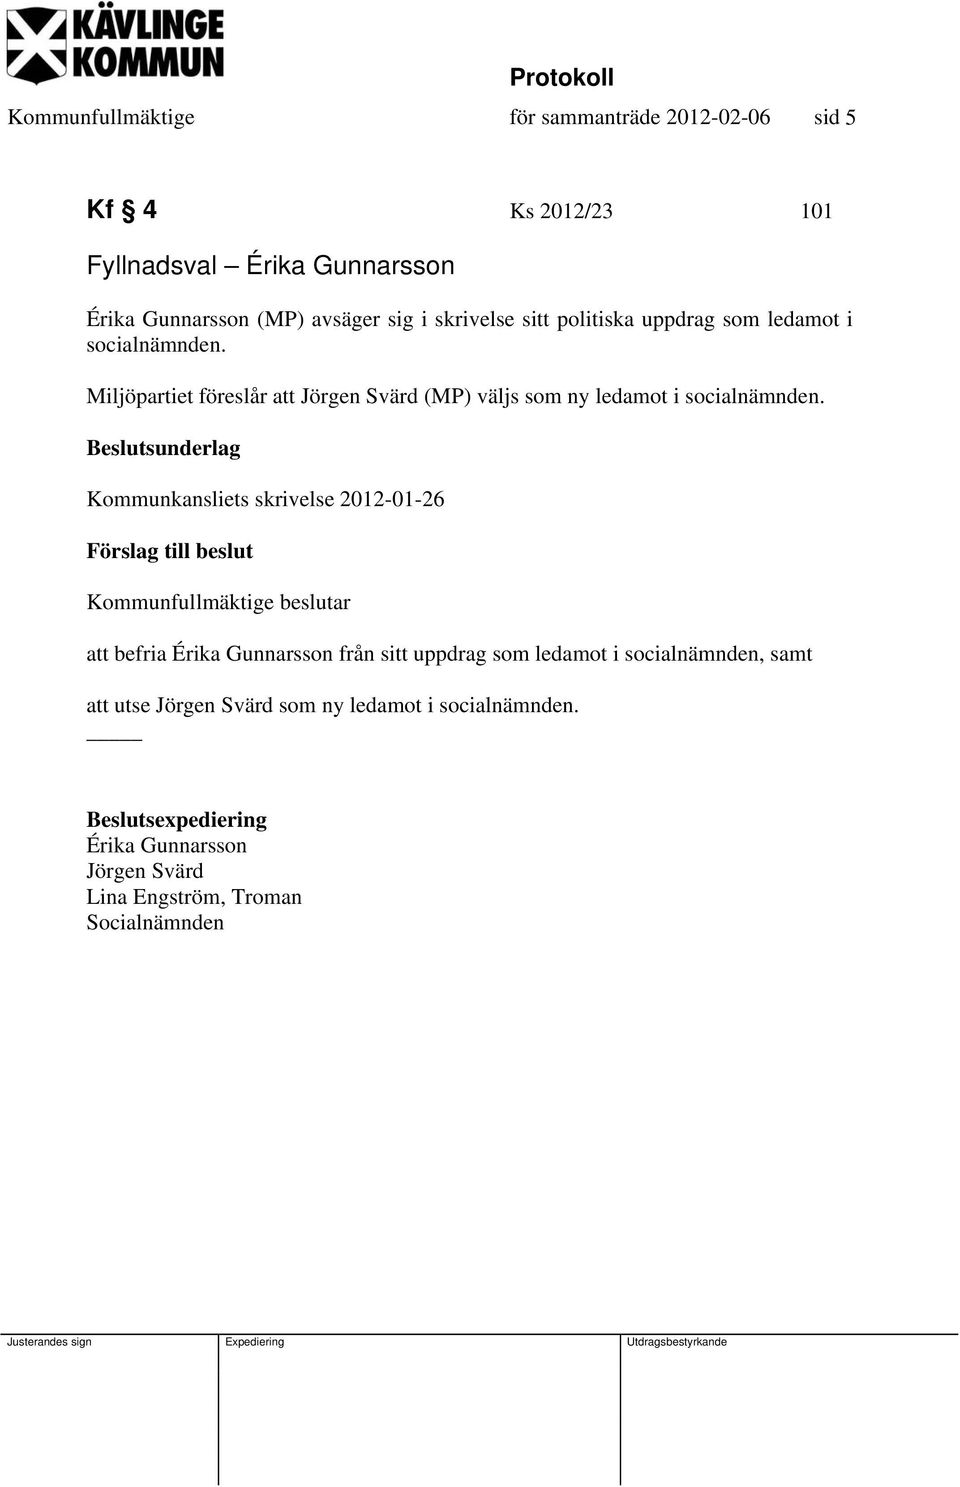 iljöpartiet föreslår att Jörgen värd (P) väljs som ny ledamot i socialnämnden.